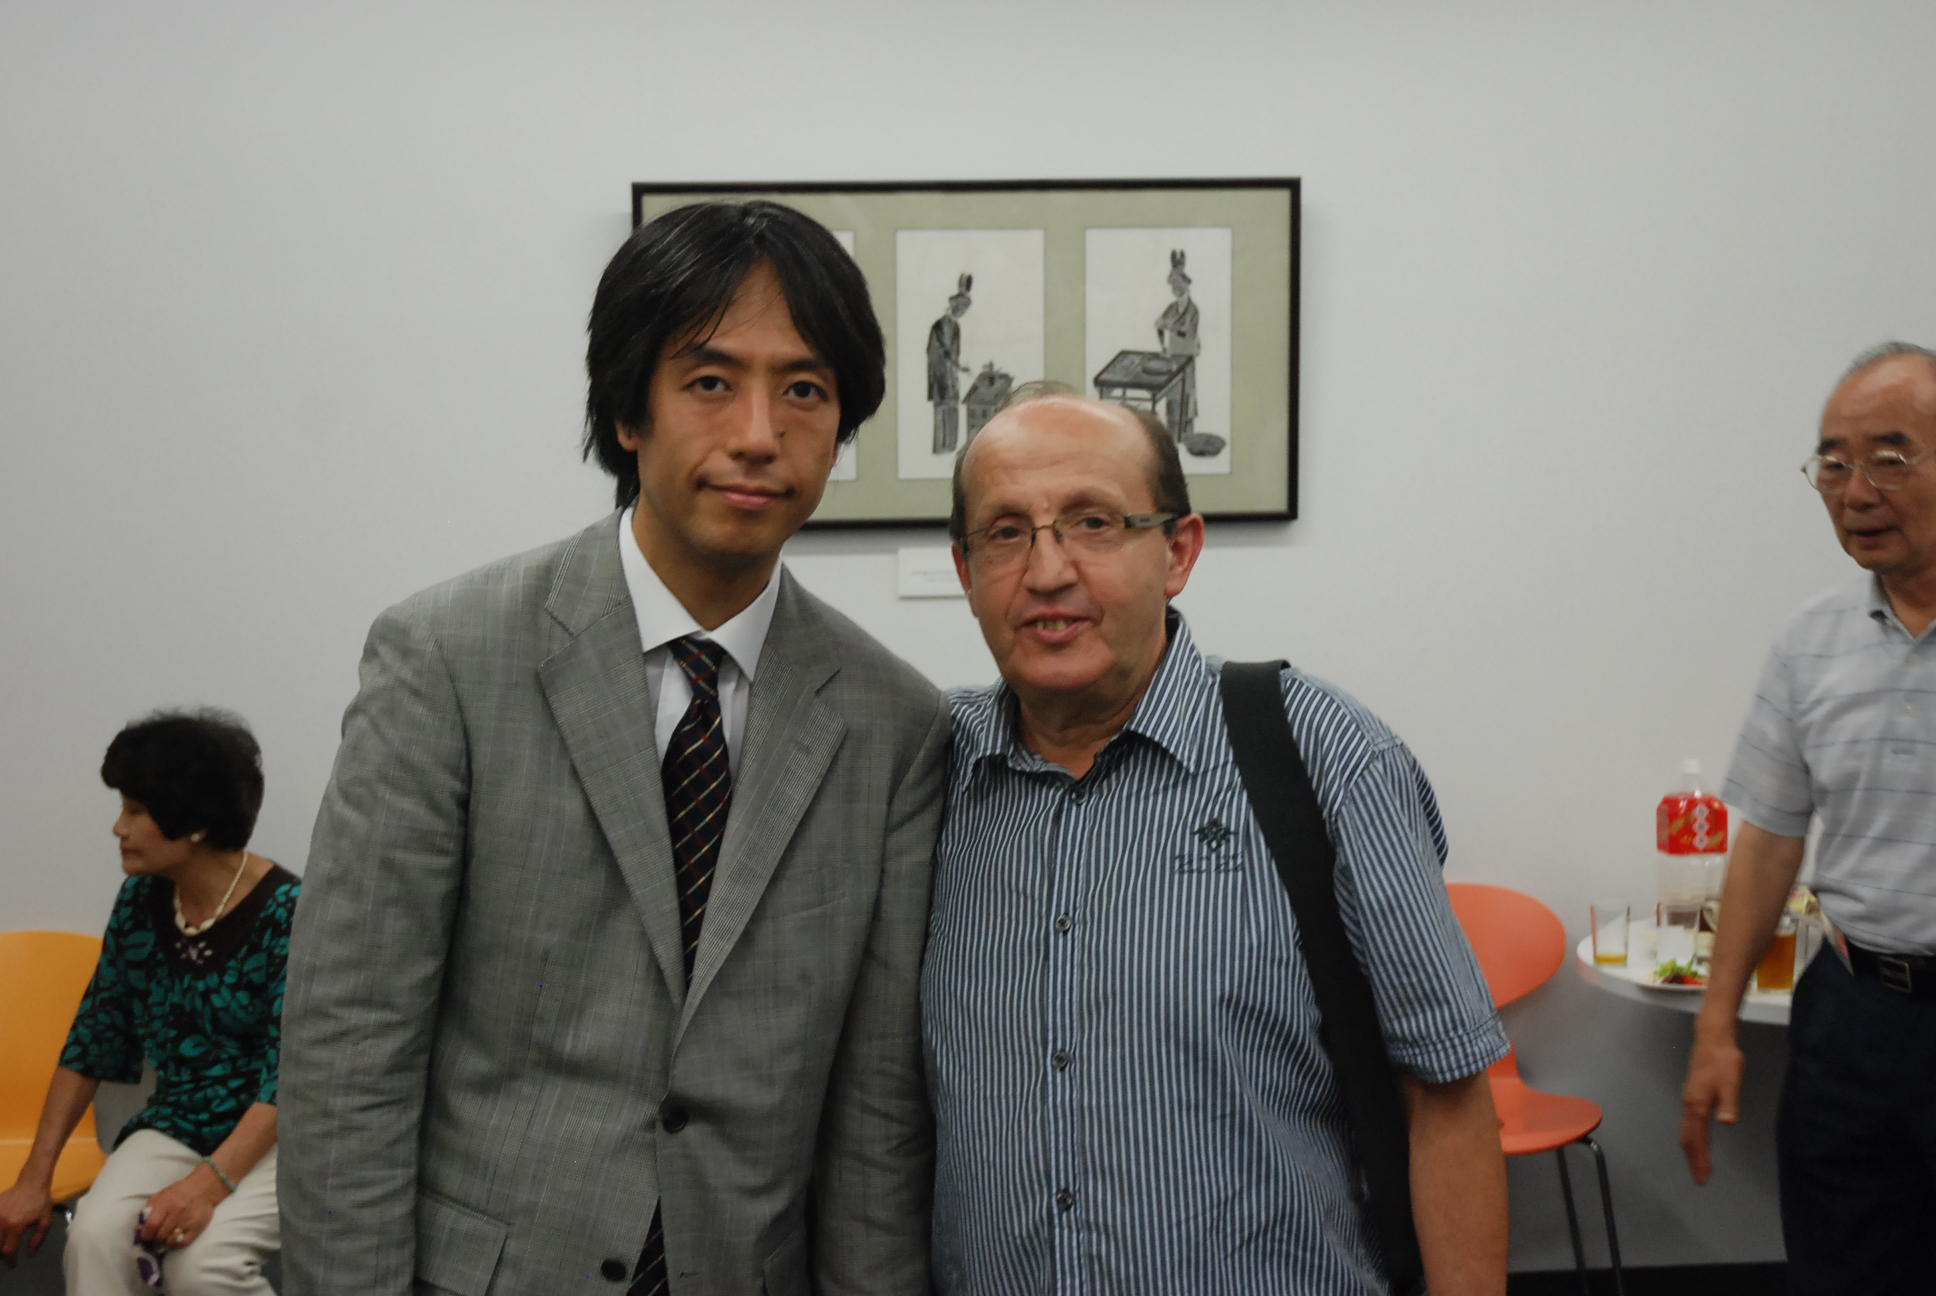 Rudi with Toshio Yanagisawa, conductor in Tokio, Japan